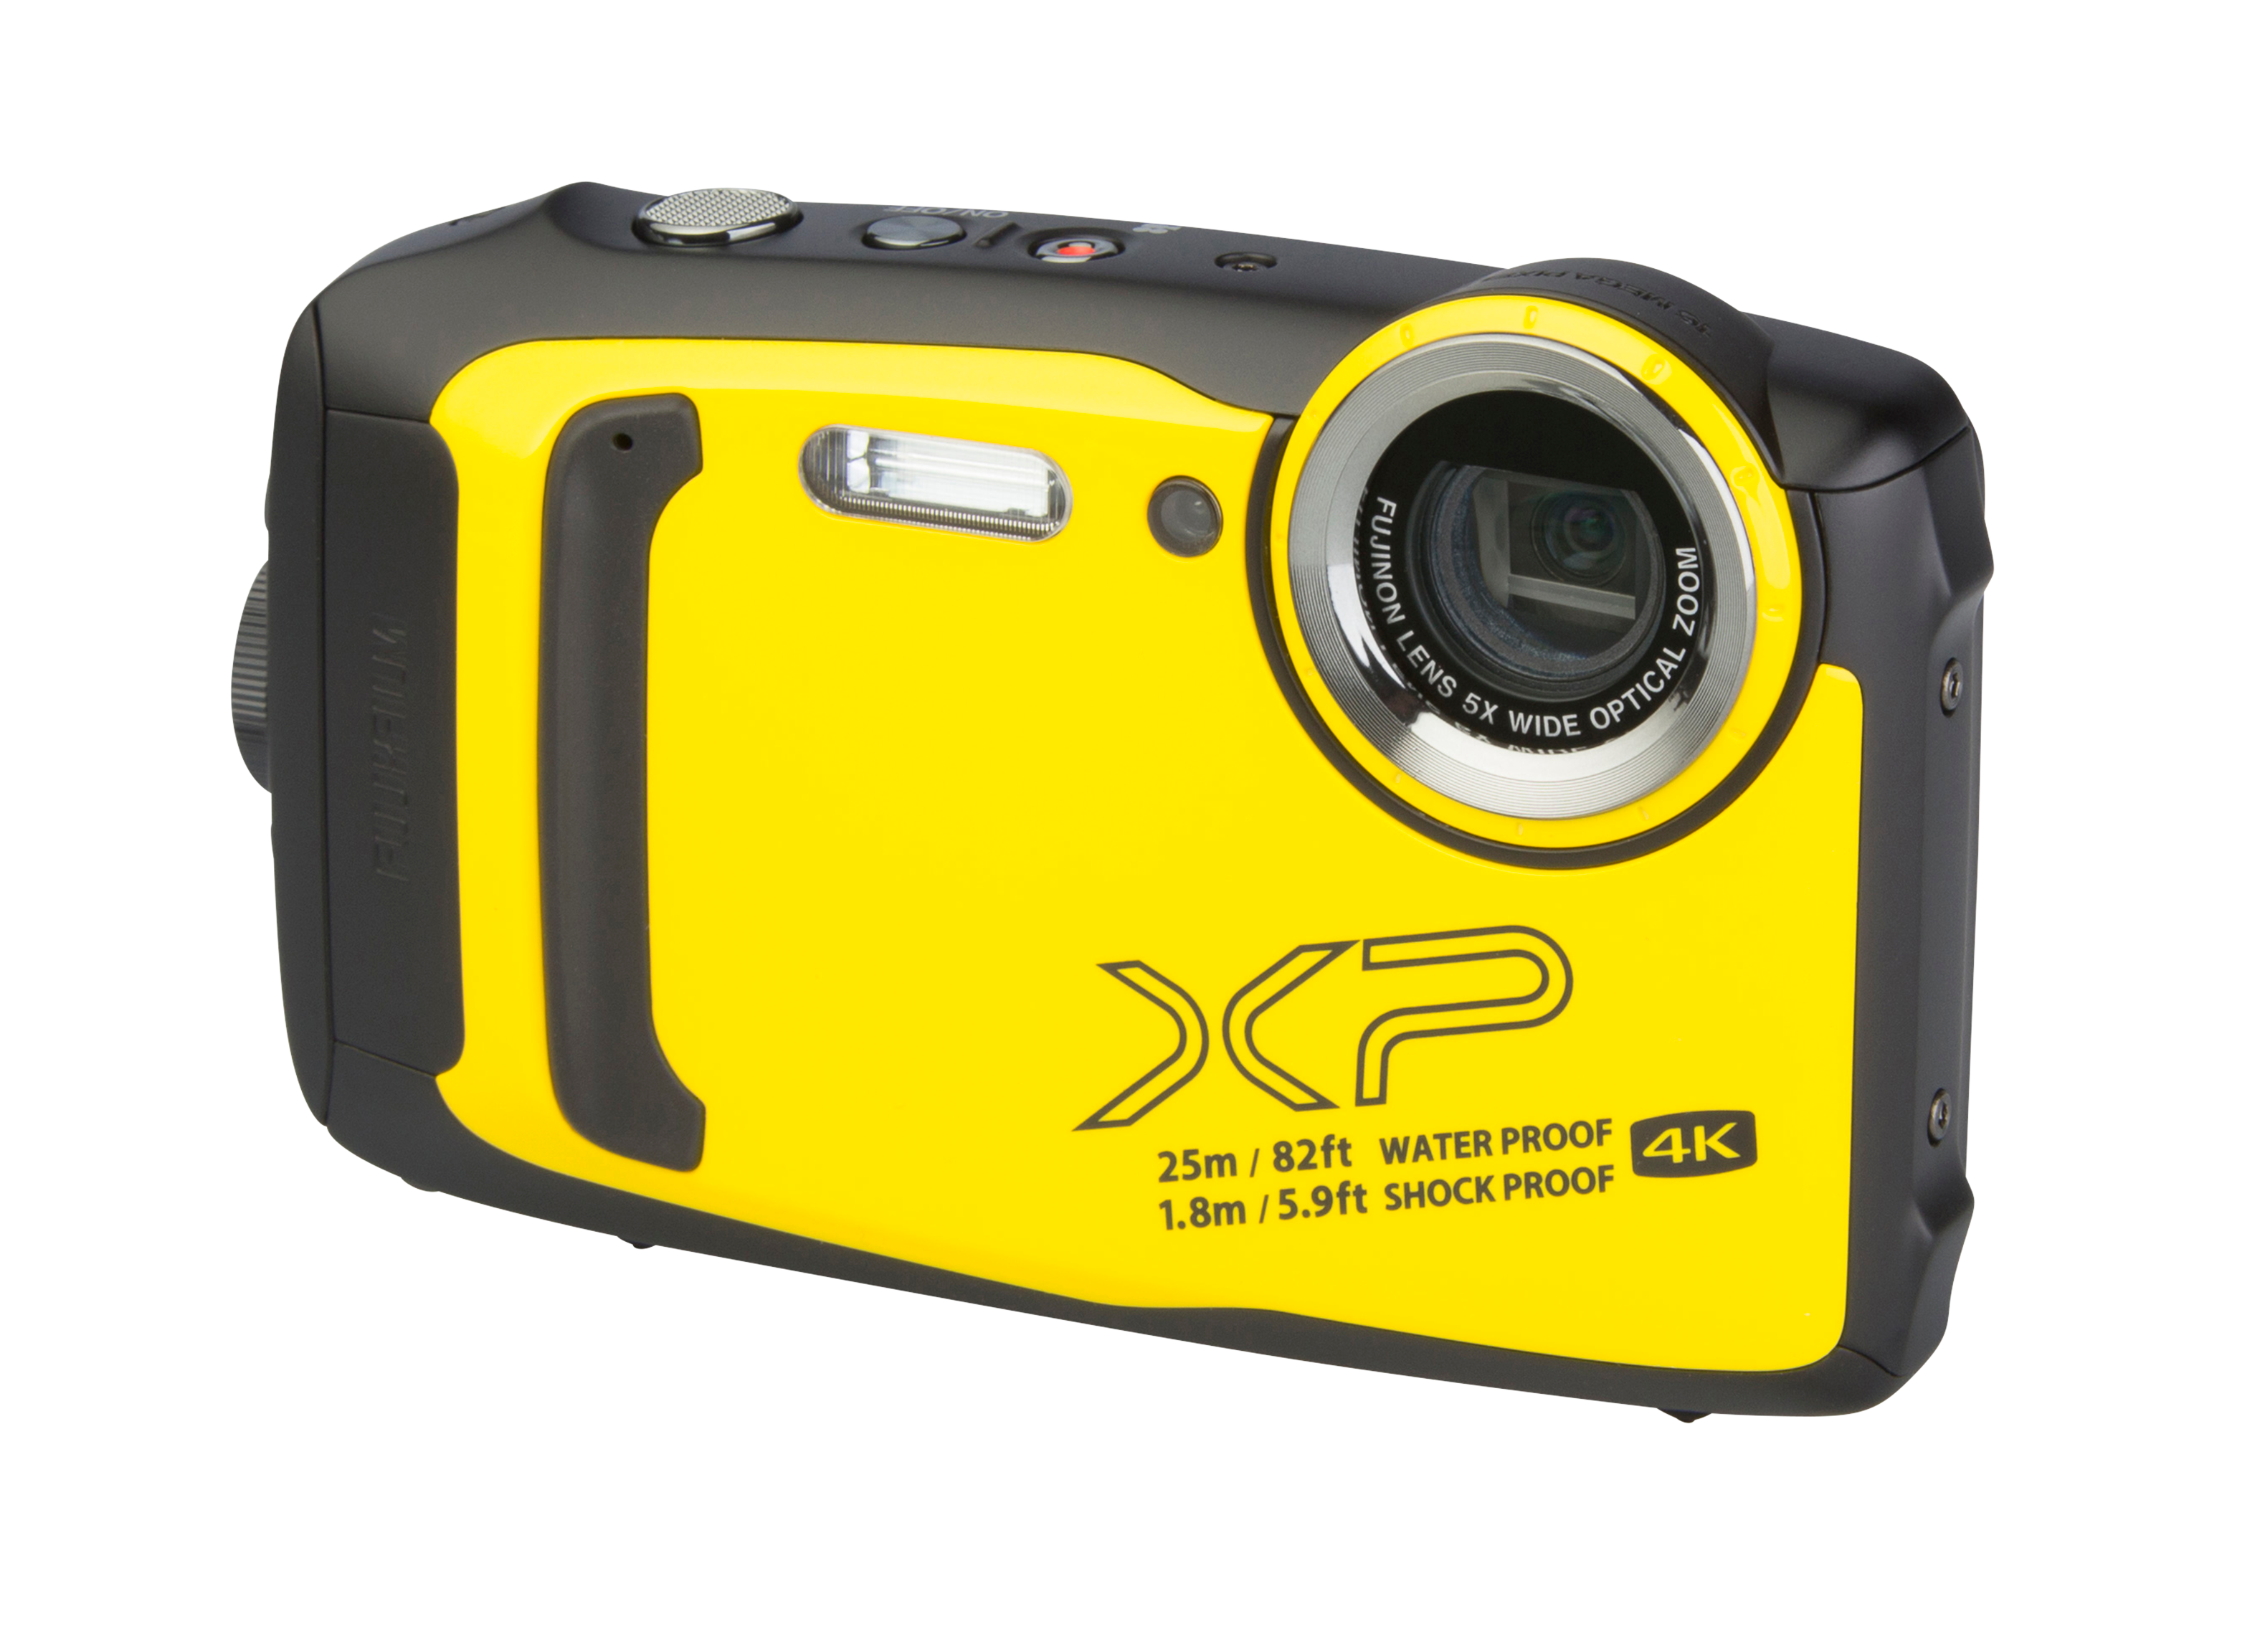 Fujifilm Finepix XP140 Camera Review - Consumer Reports